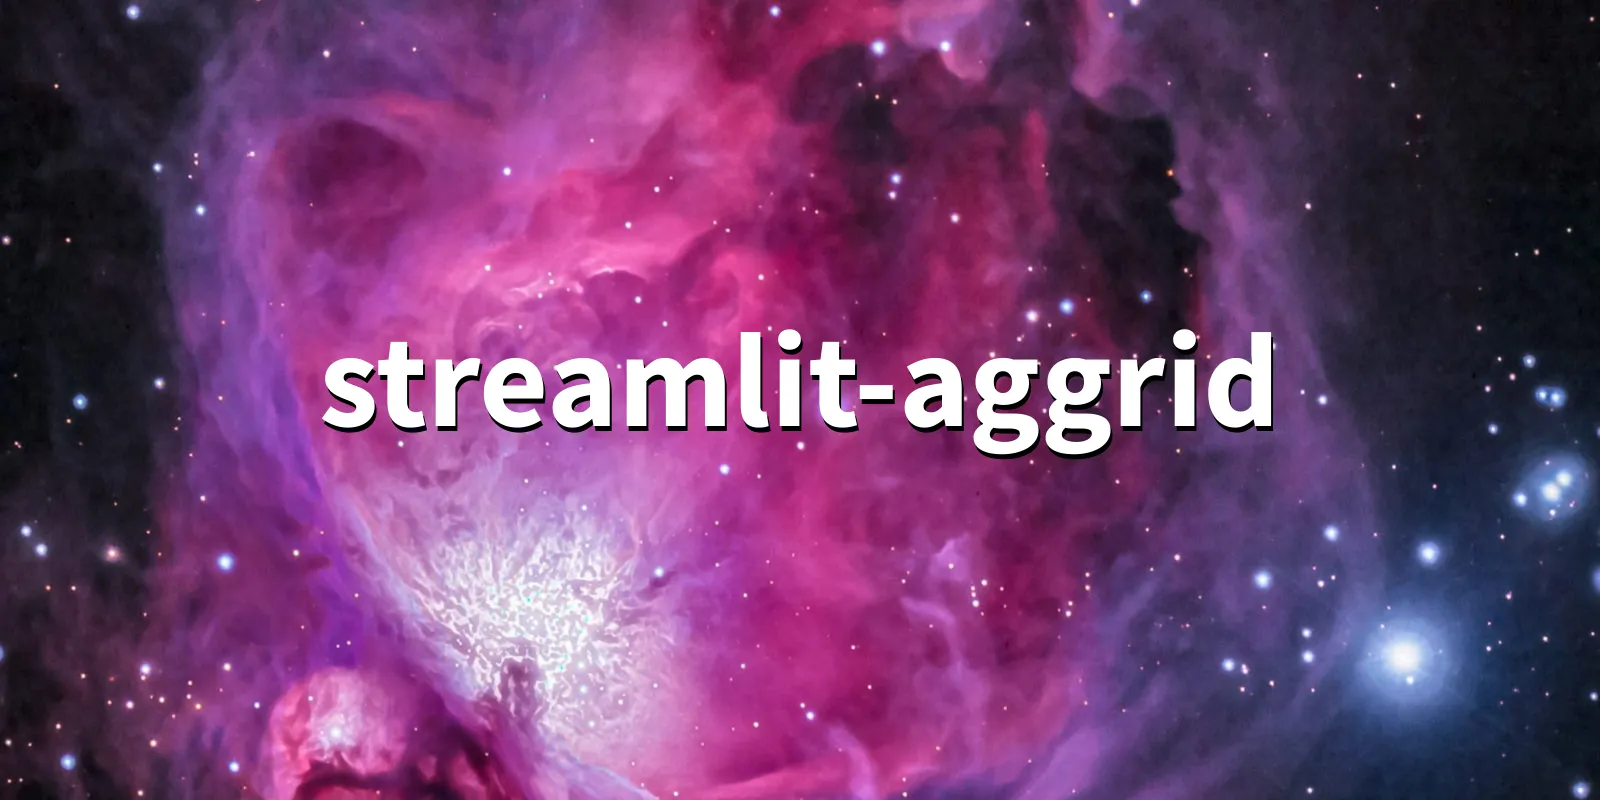 /pkg/s/streamlit-aggrid/streamlit-aggrid-banner.webp